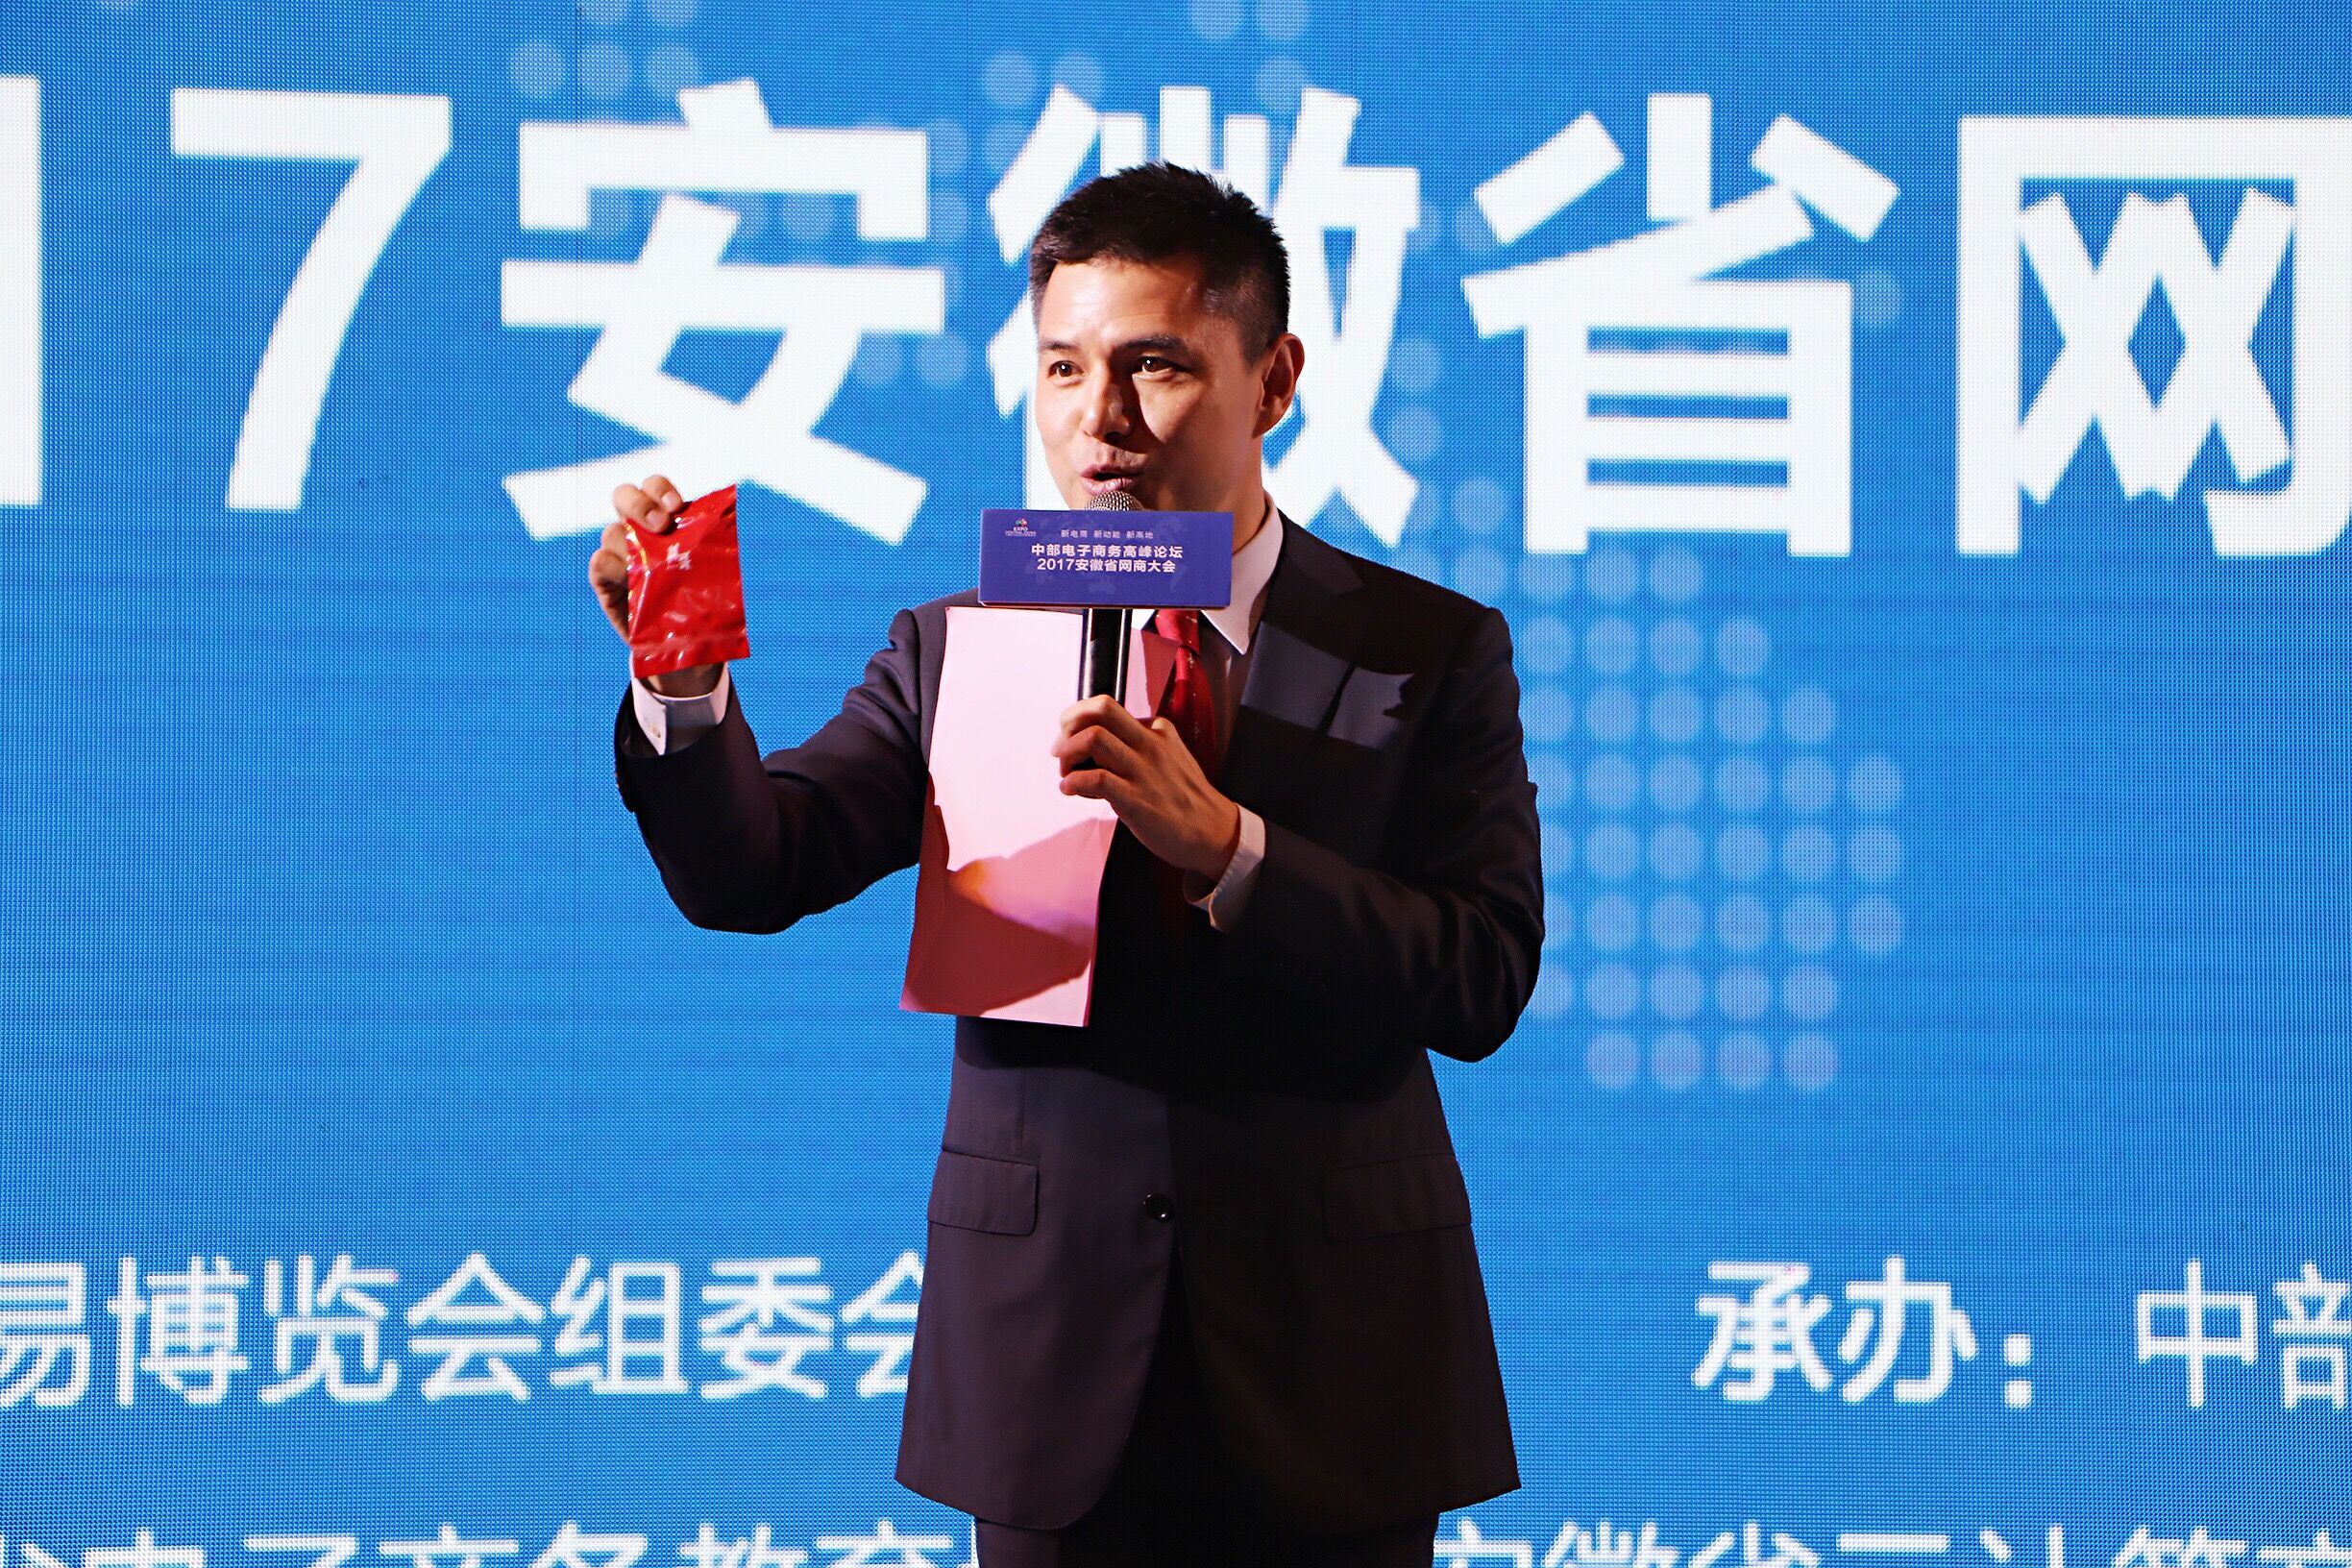 赵普率普哥品牌亮相中国中部博览会电子商务高峰论坛